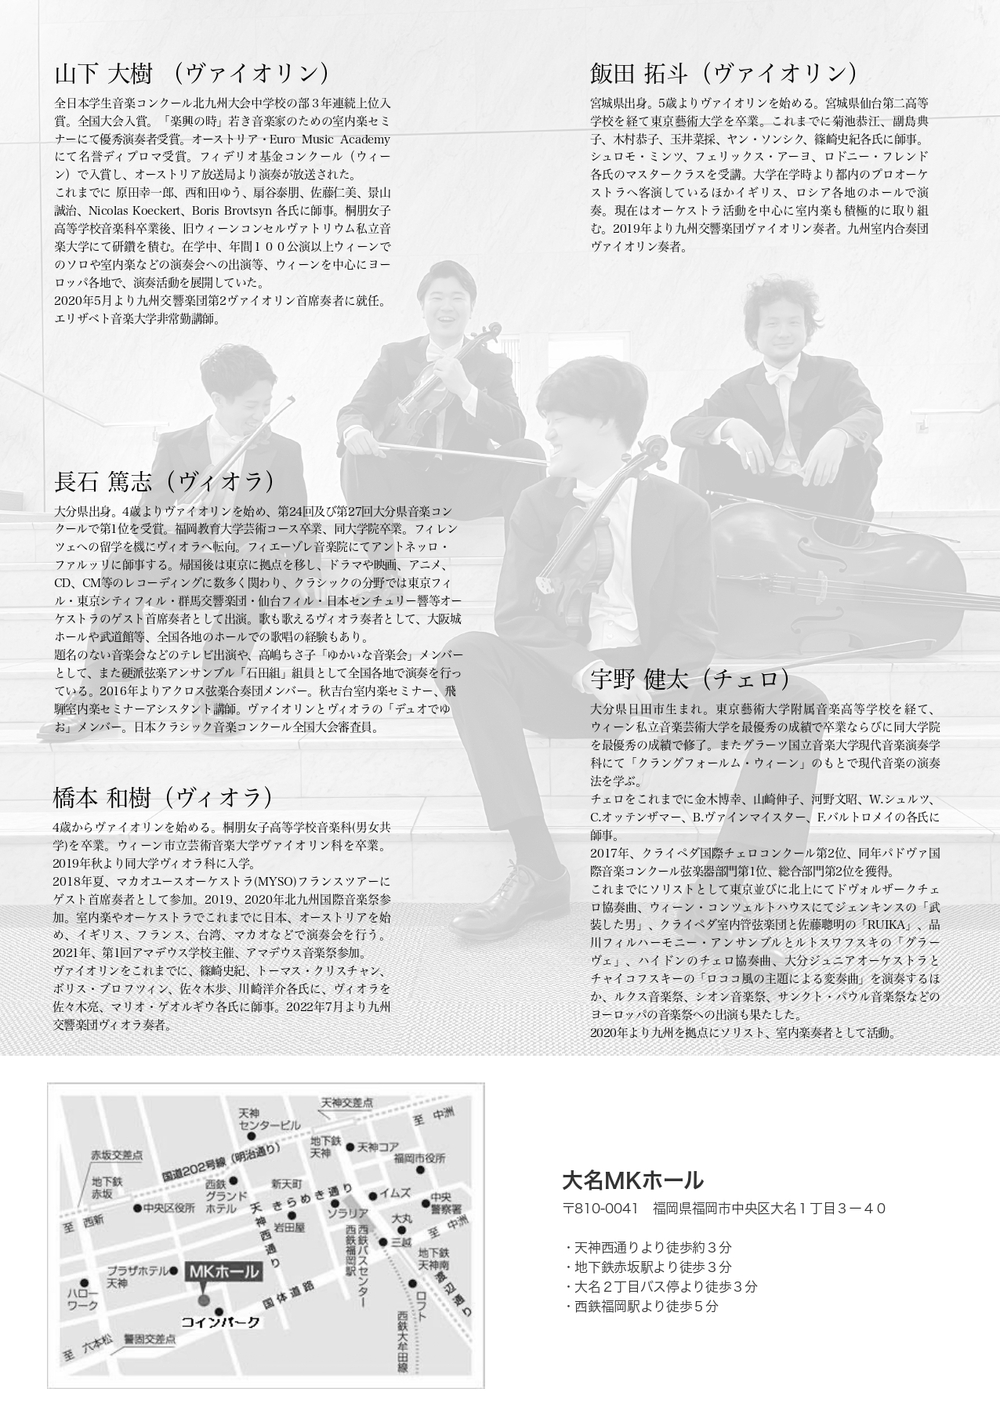 UNO弦楽四重奏団 Vol.5 〜壮麗なるブルックナー〜【九州チェロプロジェクト】 | 大名MKホール